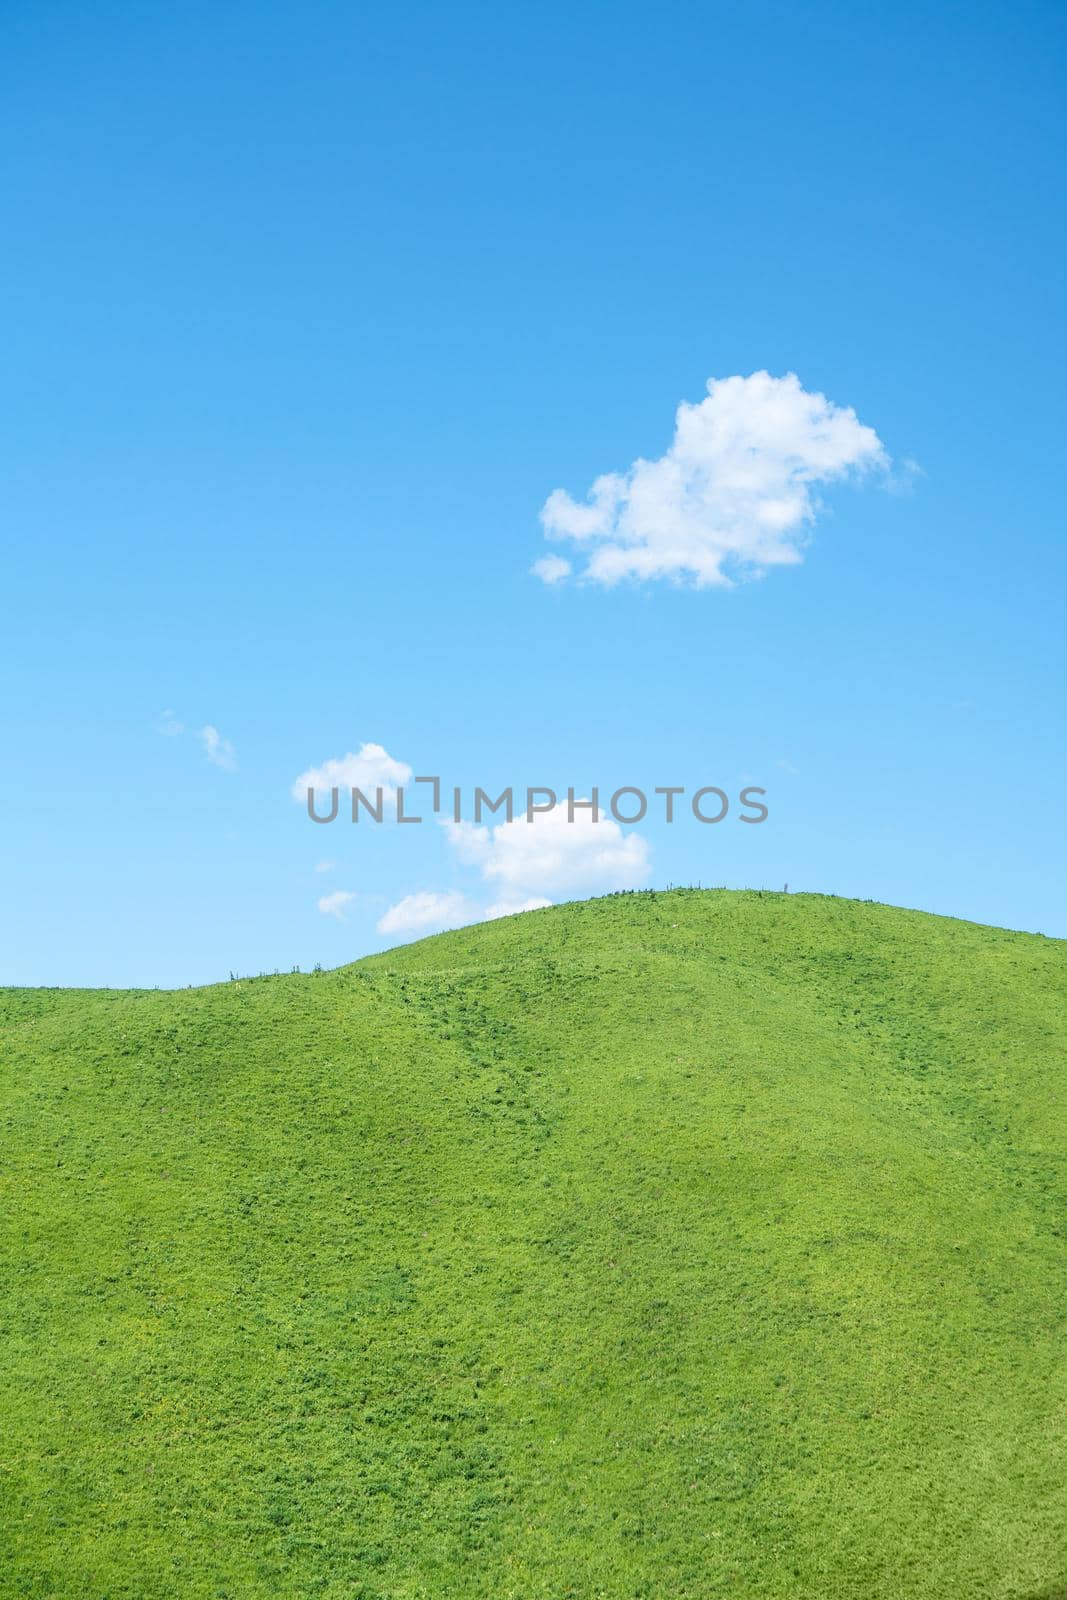 Nalati grassland with the blue sky. Shot in Xinjiang, China.